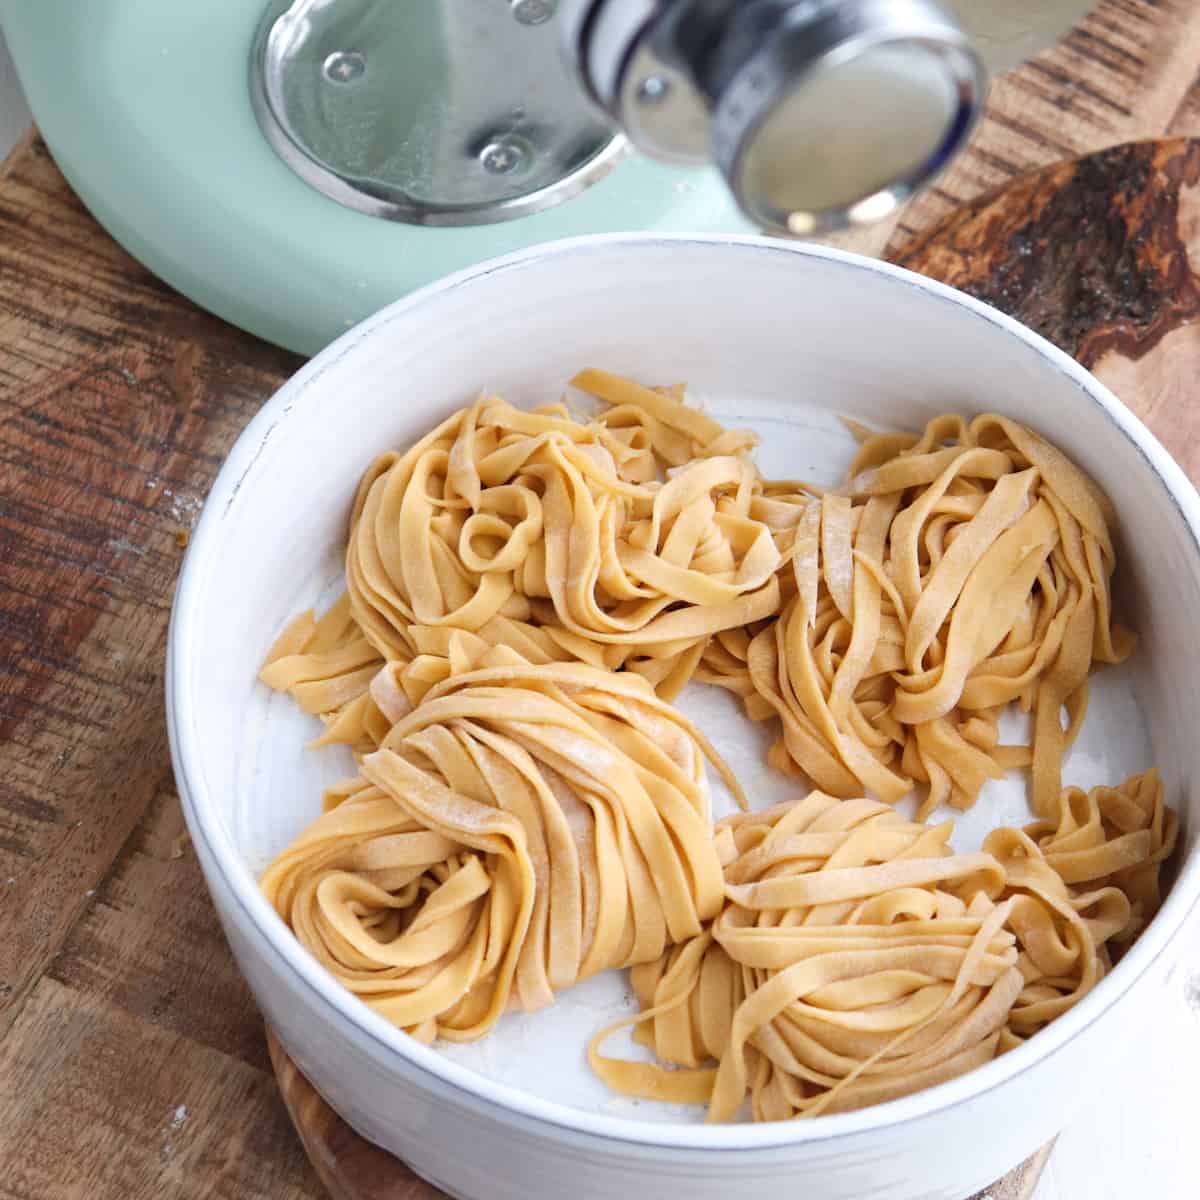 Fresh Pasta Recipe